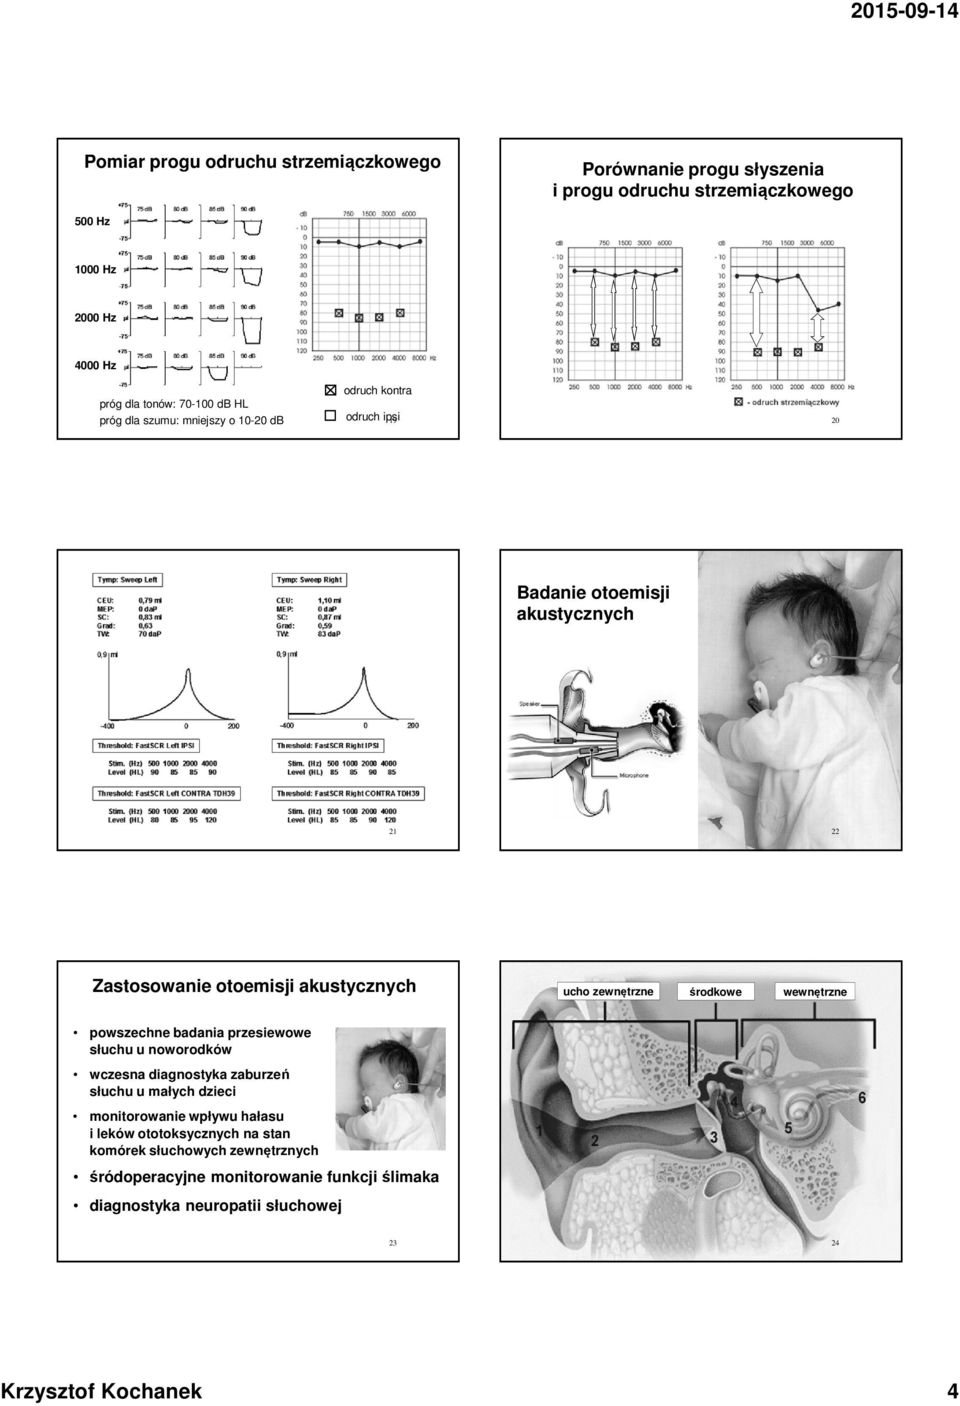 wewnętrzne powszechne badania przesiewowe słuchu u noworodków wczesna diagnostyka zaburzeń słuchu u małych dzieci monitorowanie wpływu hałasu i leków